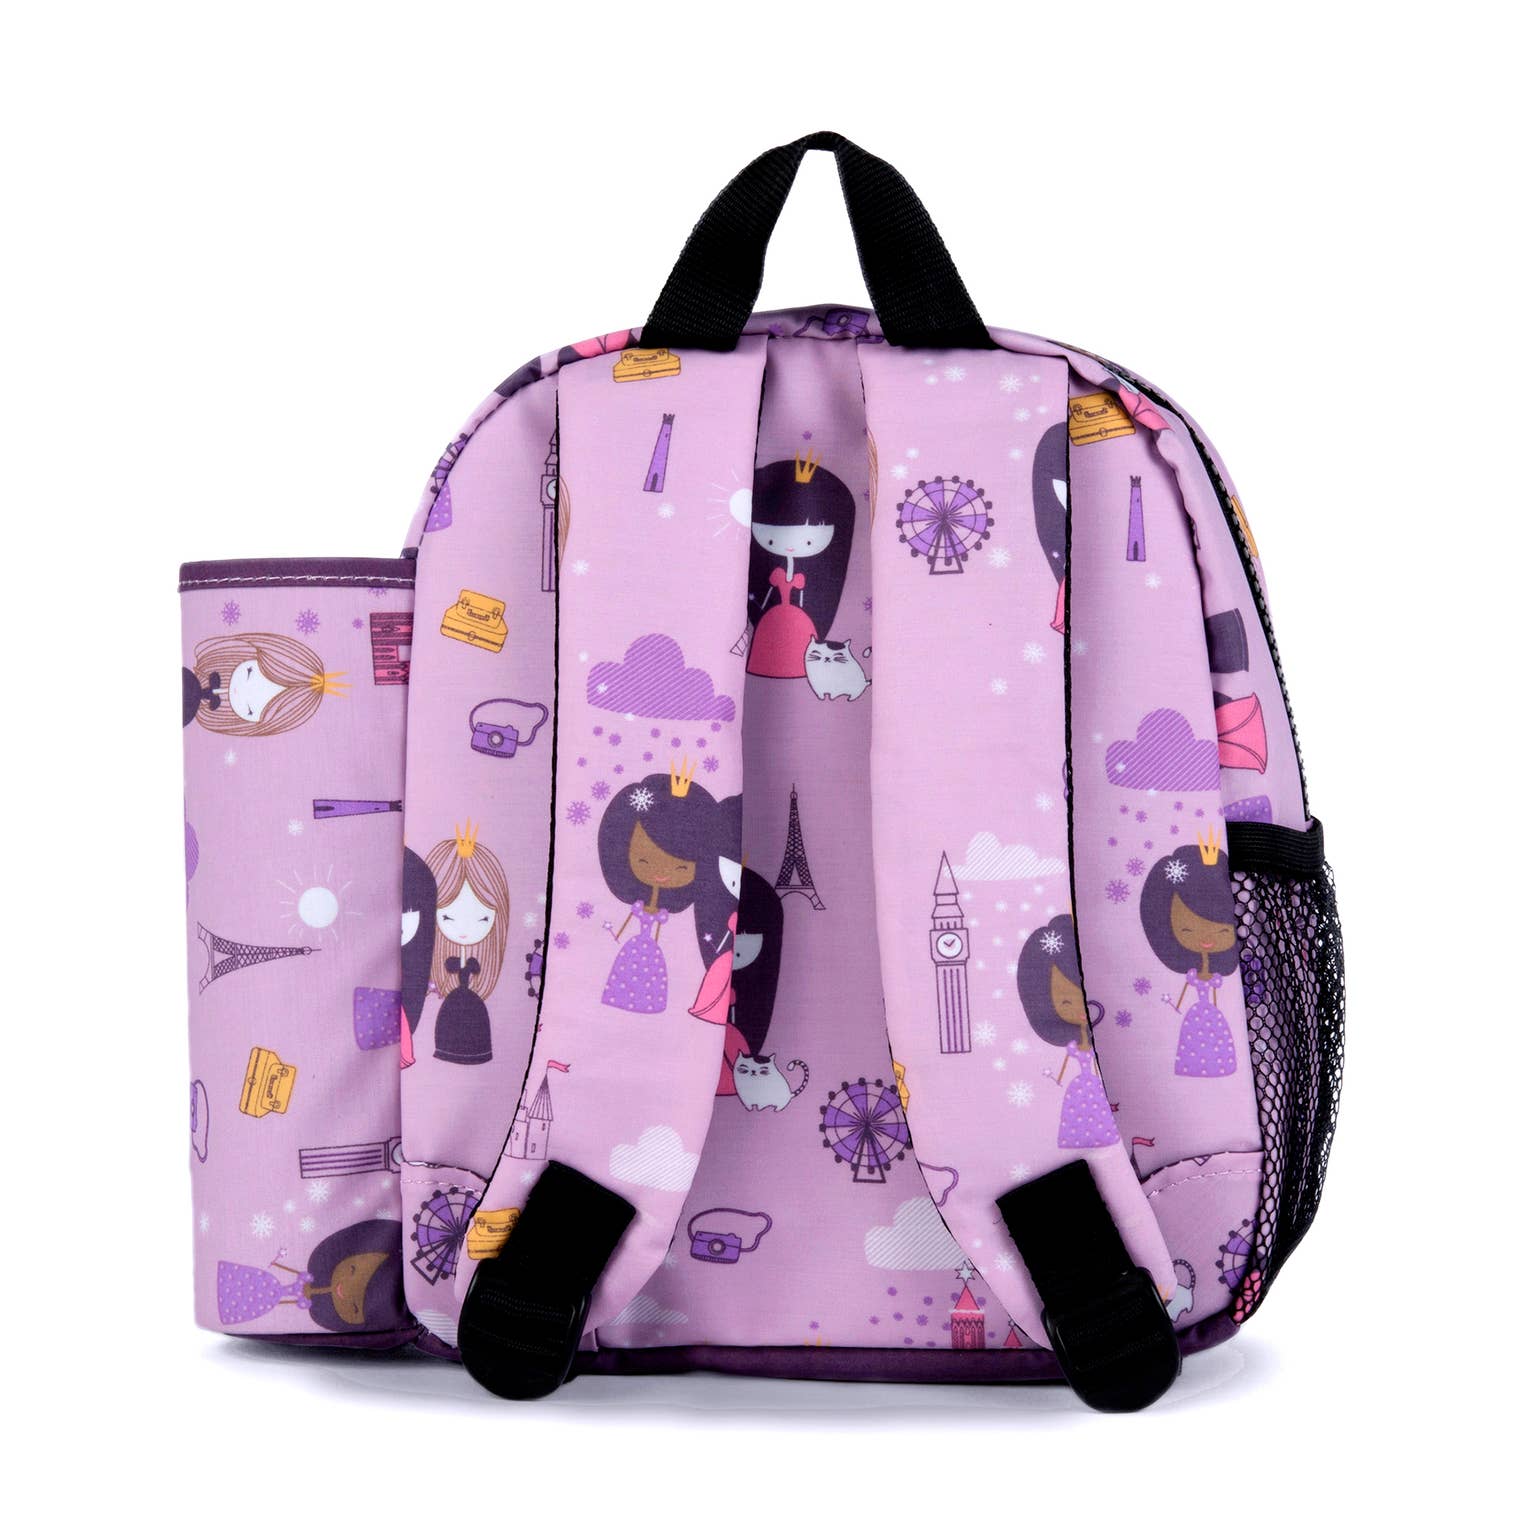 Urban Infant Packie Toddler Backpack - Violet